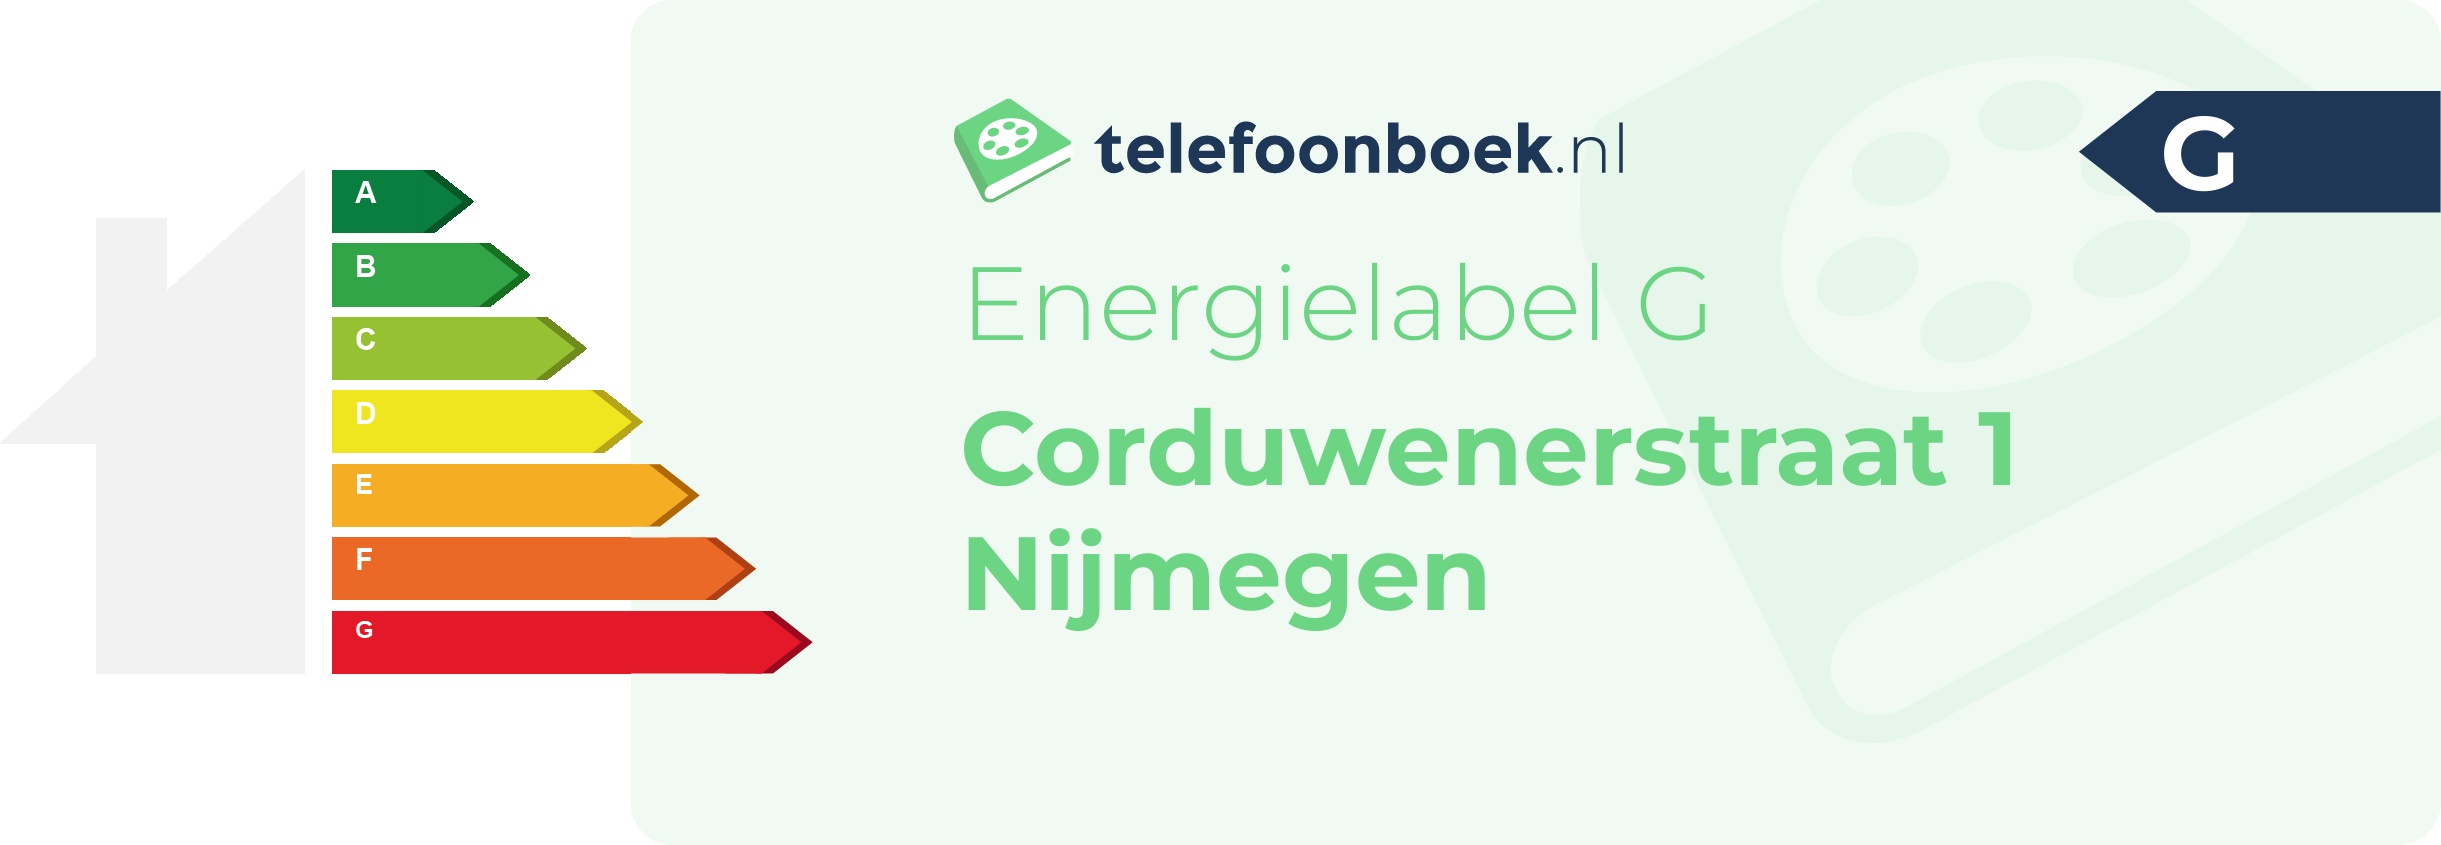 Energielabel Corduwenerstraat 1 Nijmegen